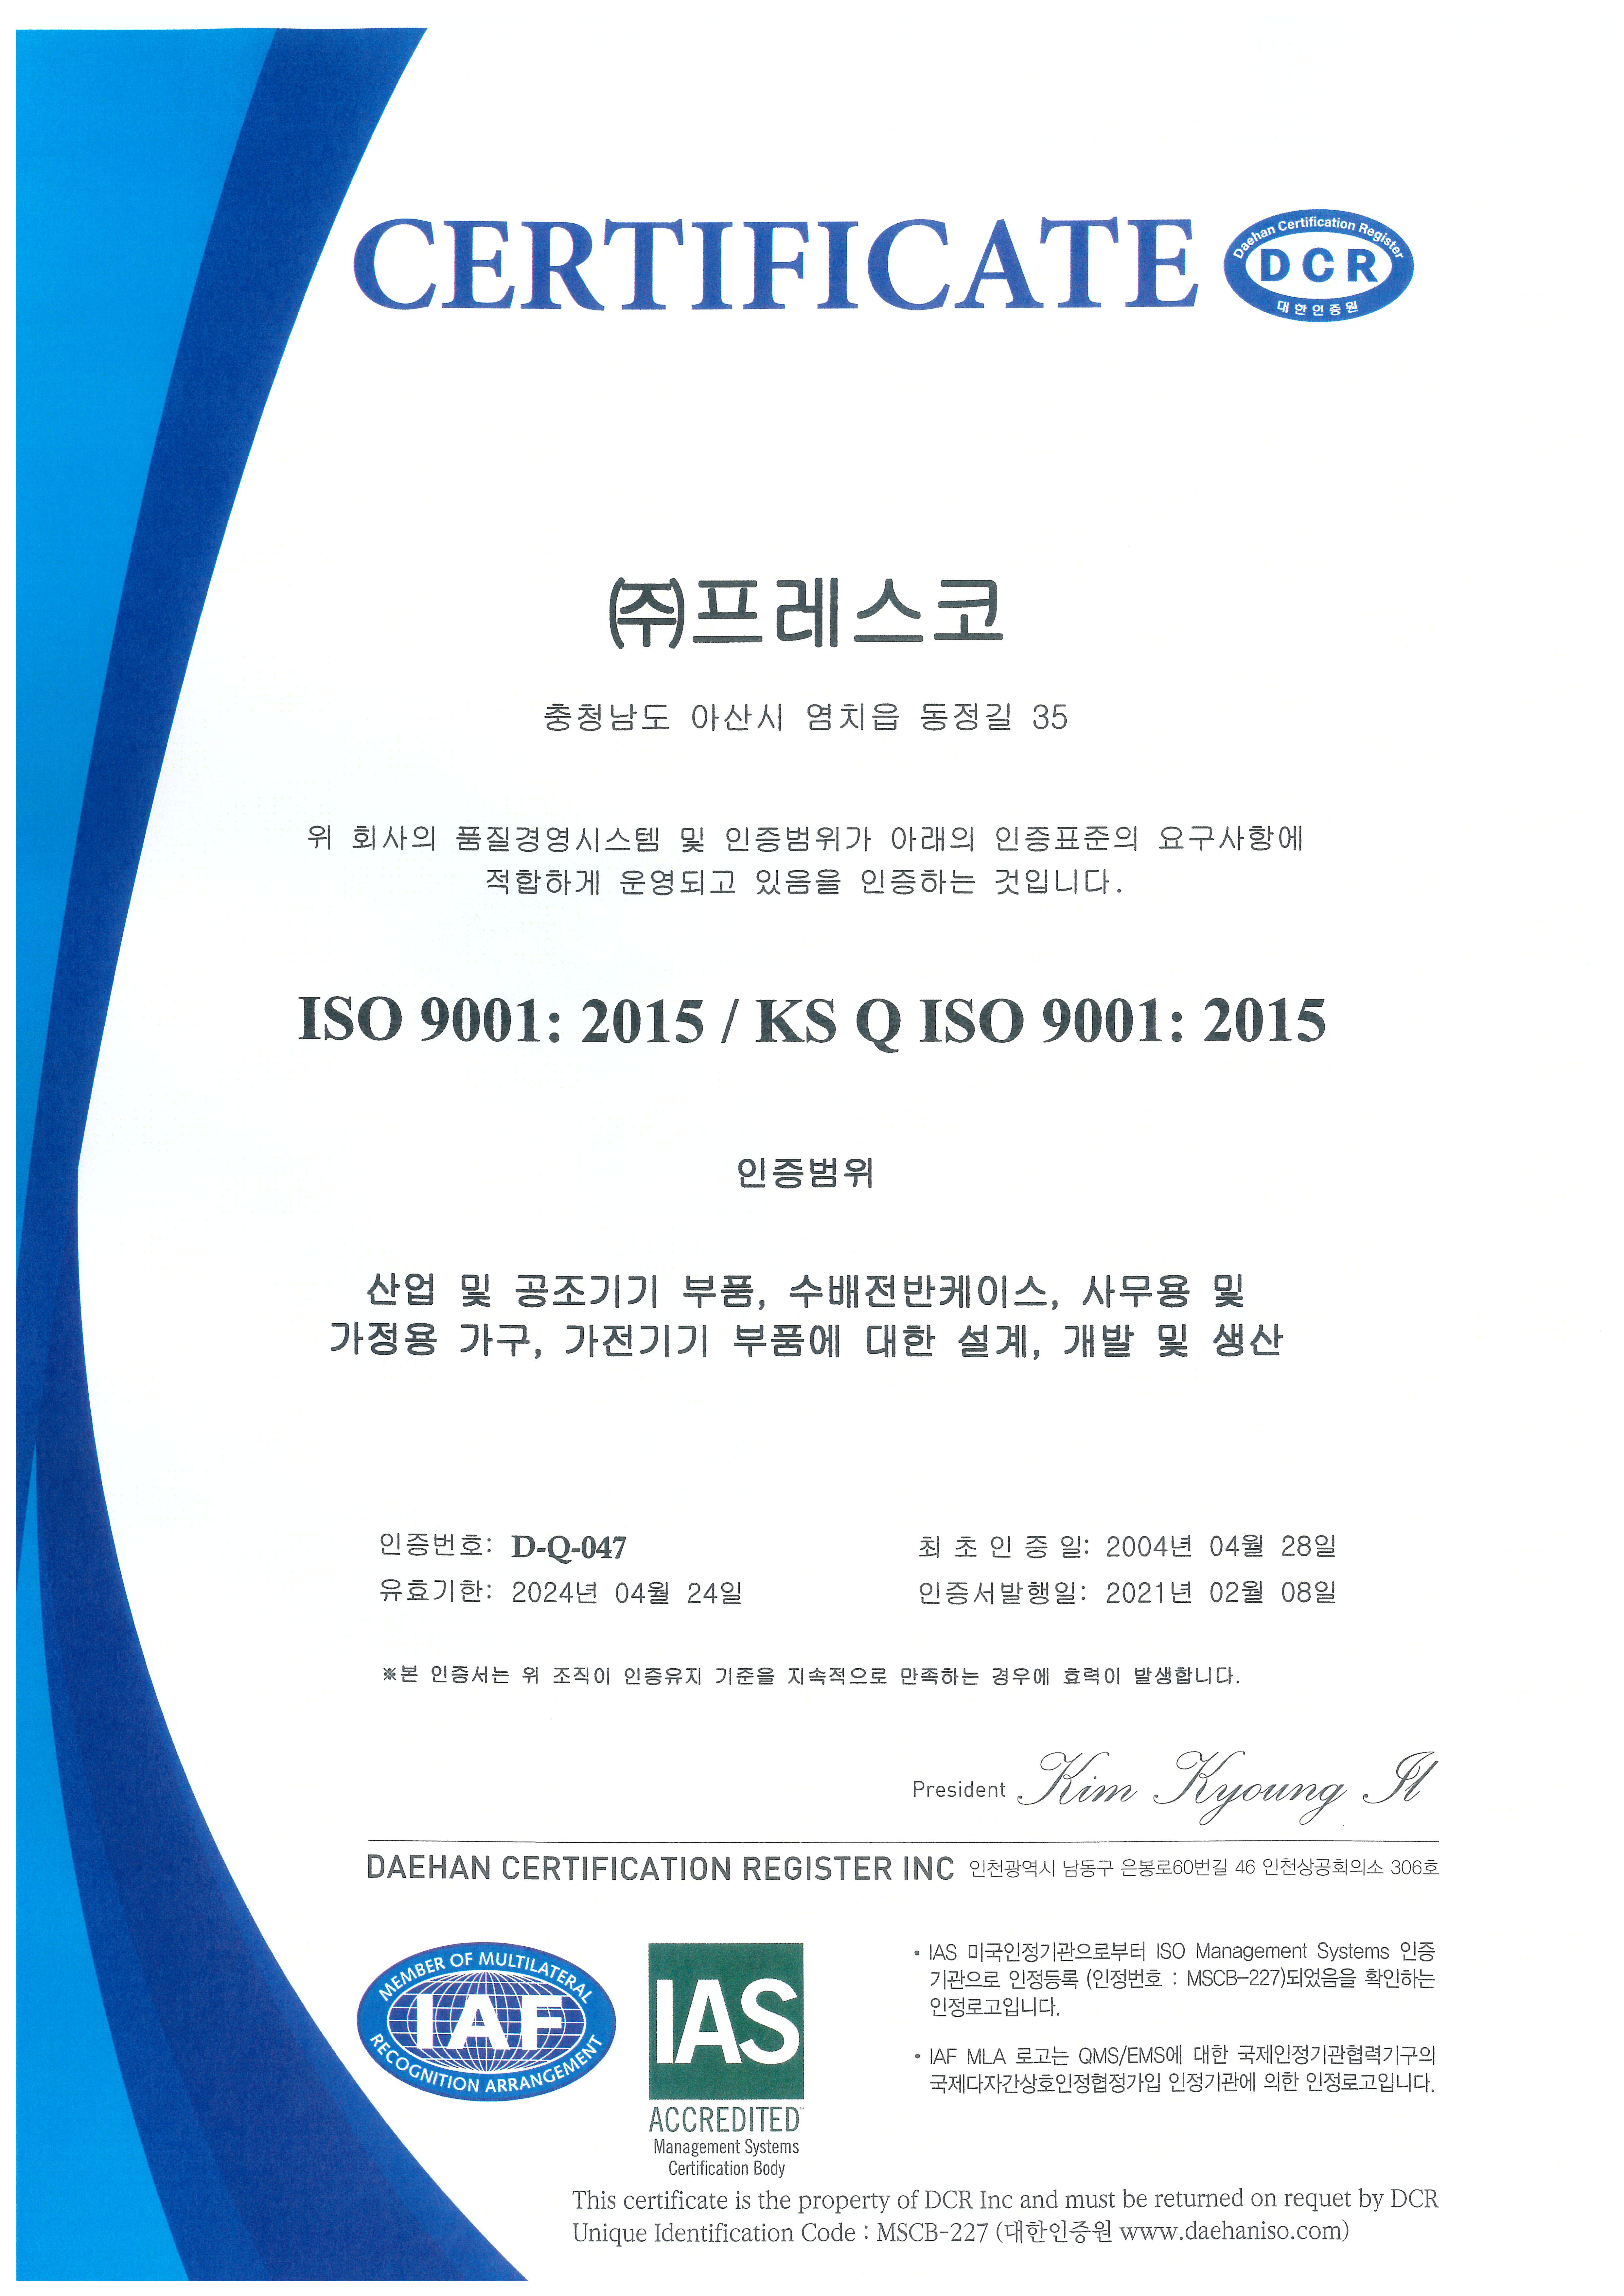 CERTIFICATE-ISO9001.jpg